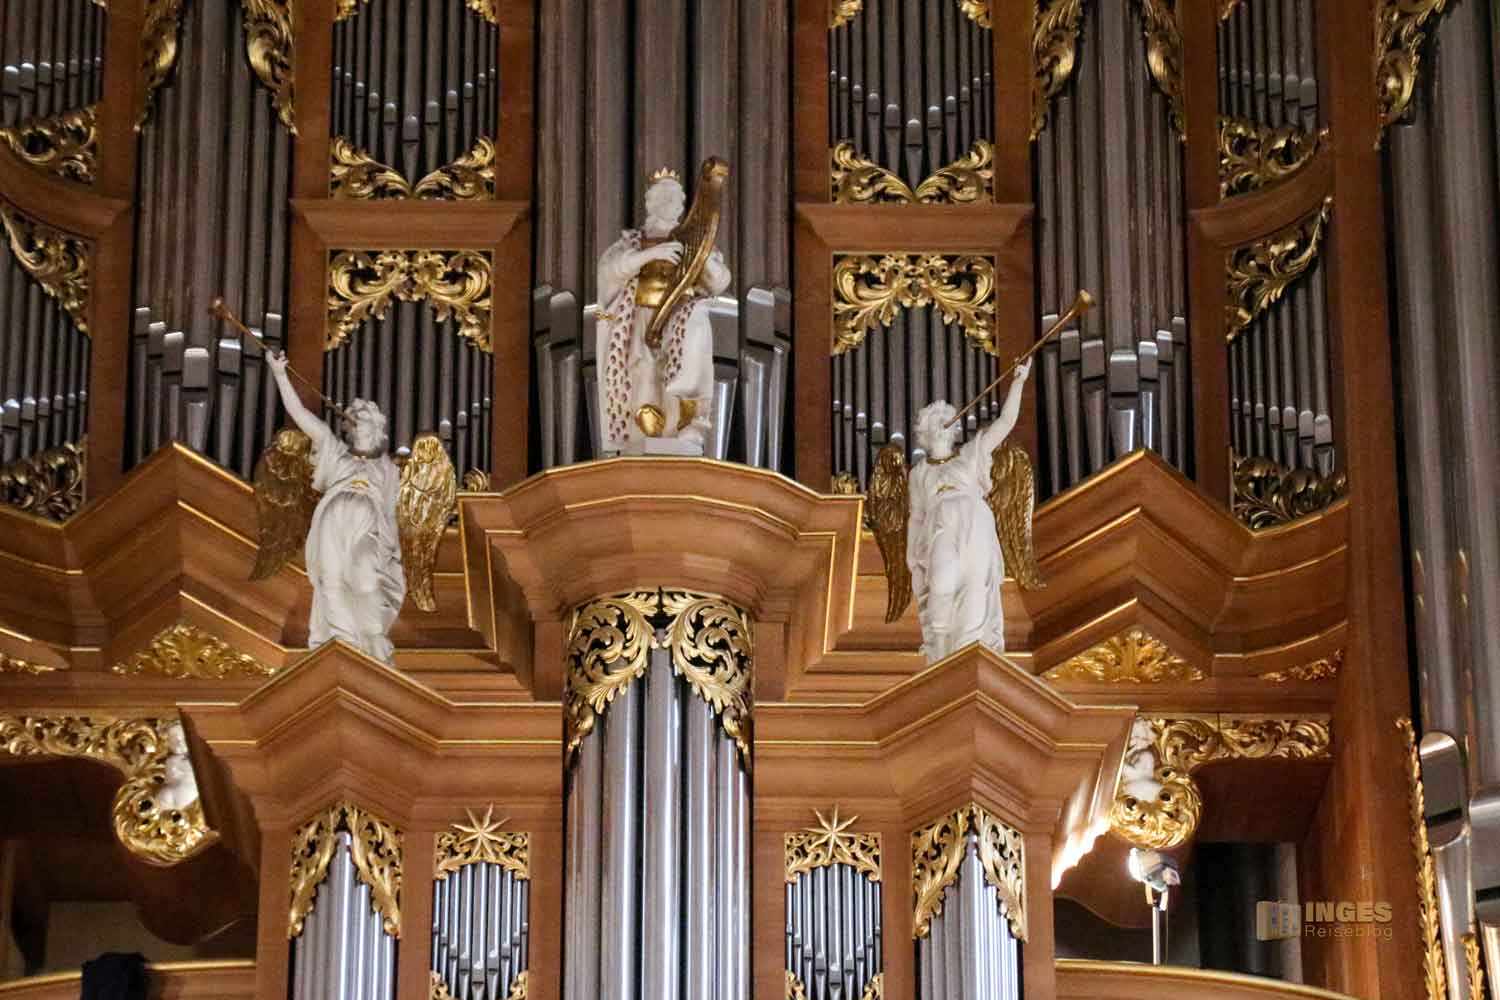 Arp-Schnitger-Orgel St. Jacobi Hamburg 7060